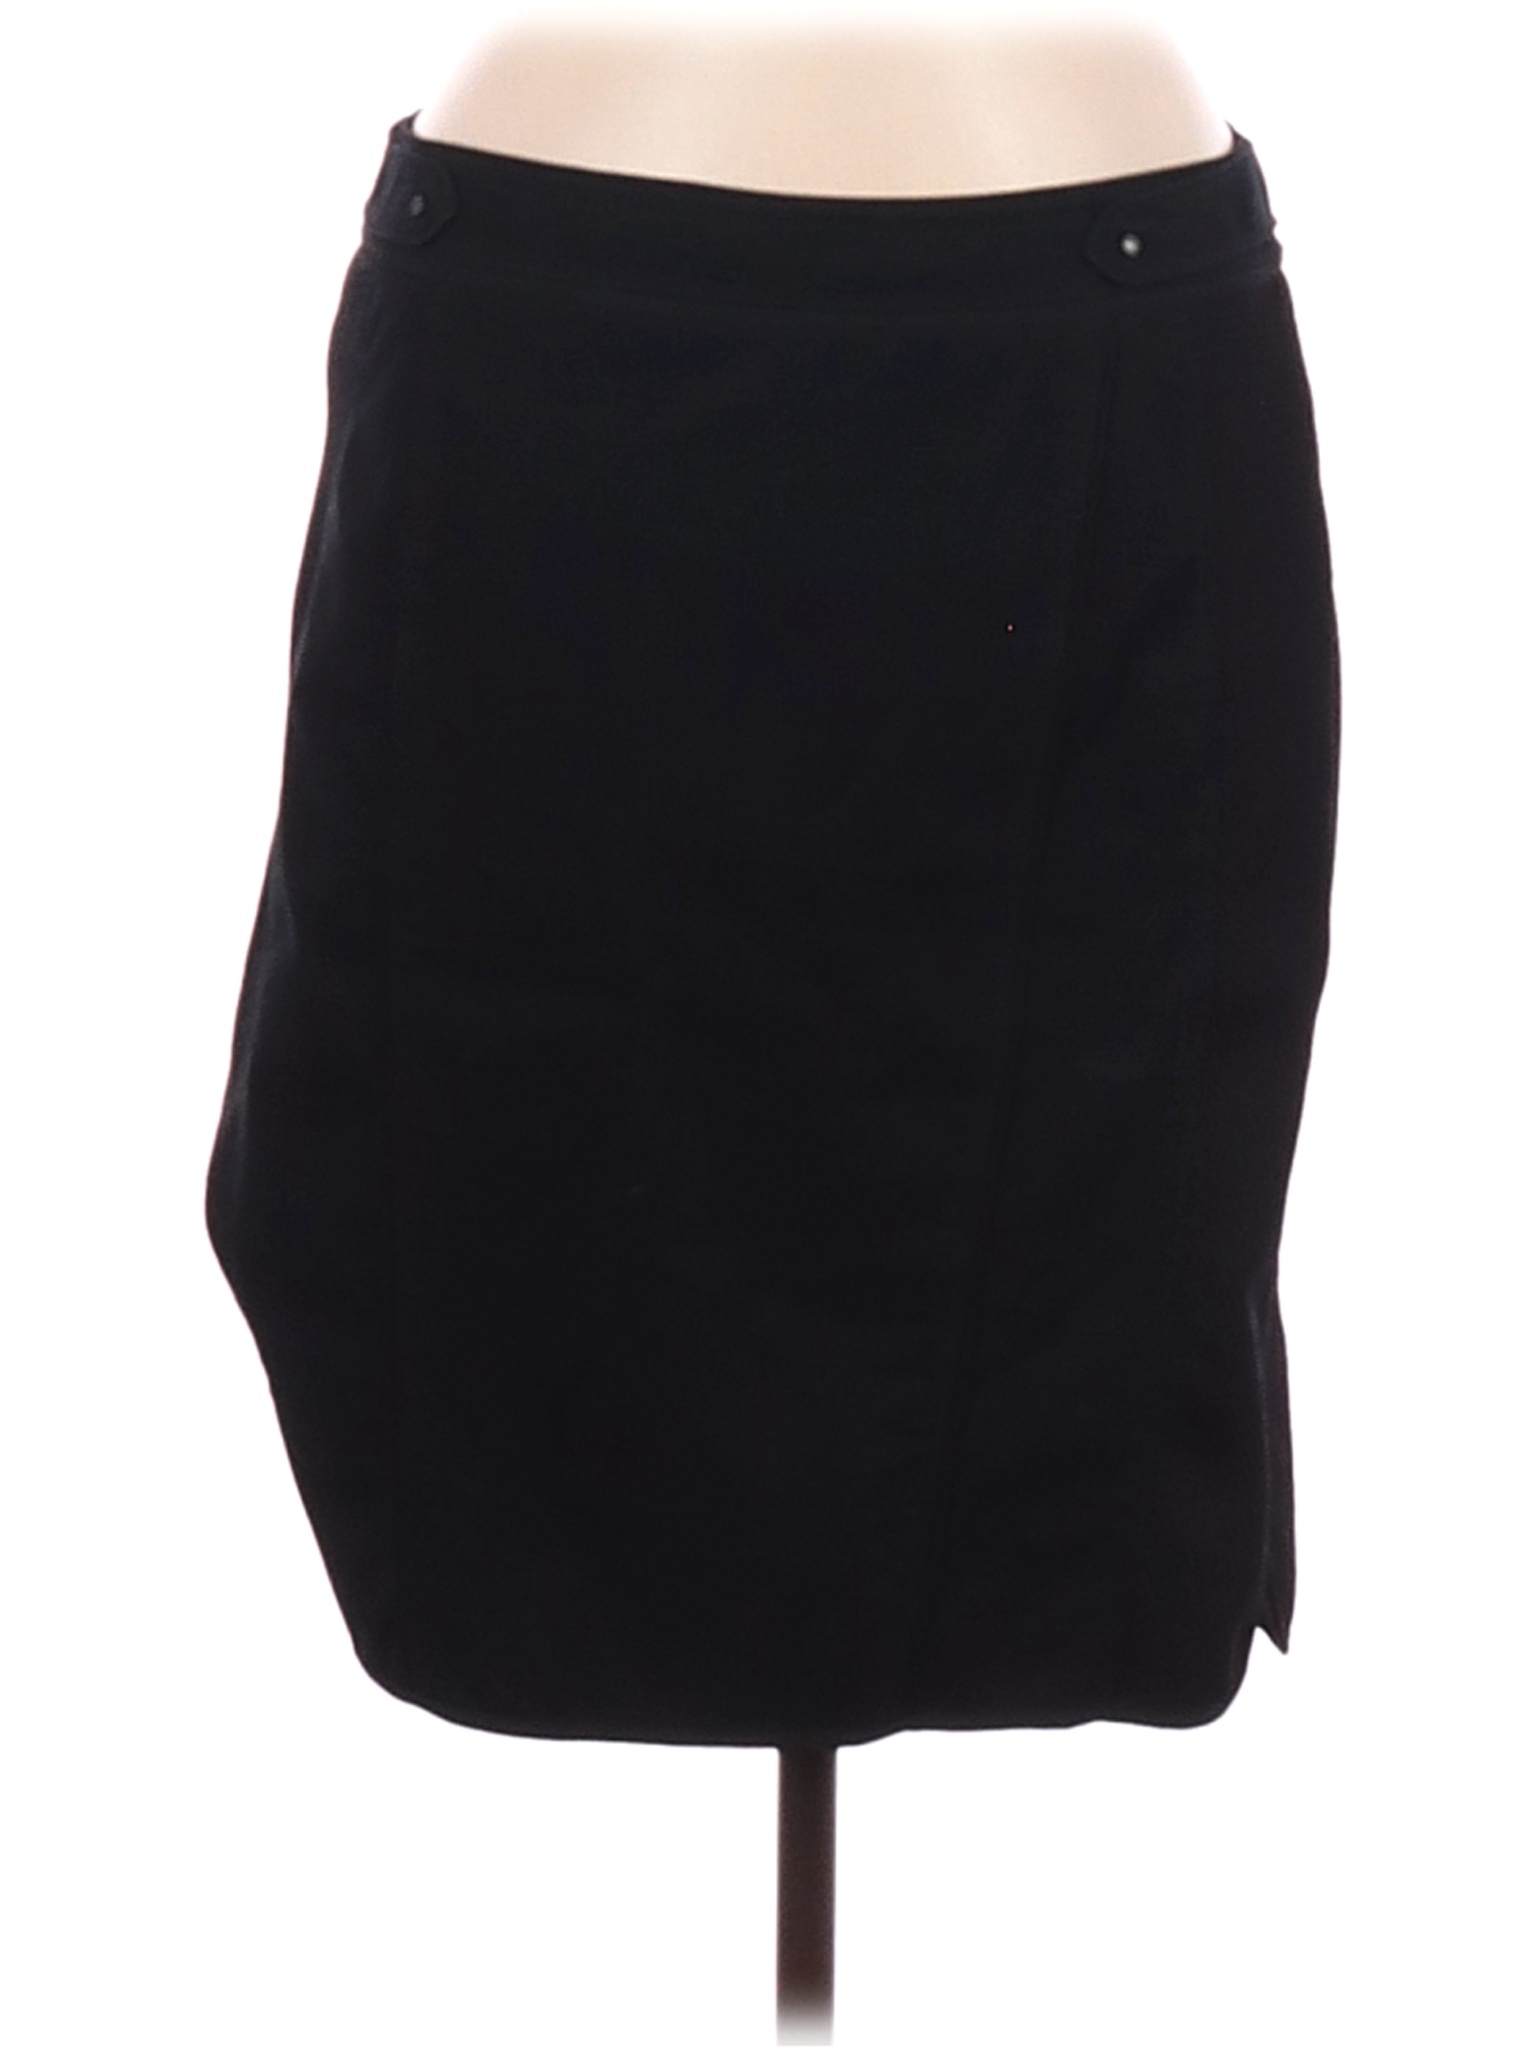 White House Black Market Women Black Casual Skirt 8 | eBay